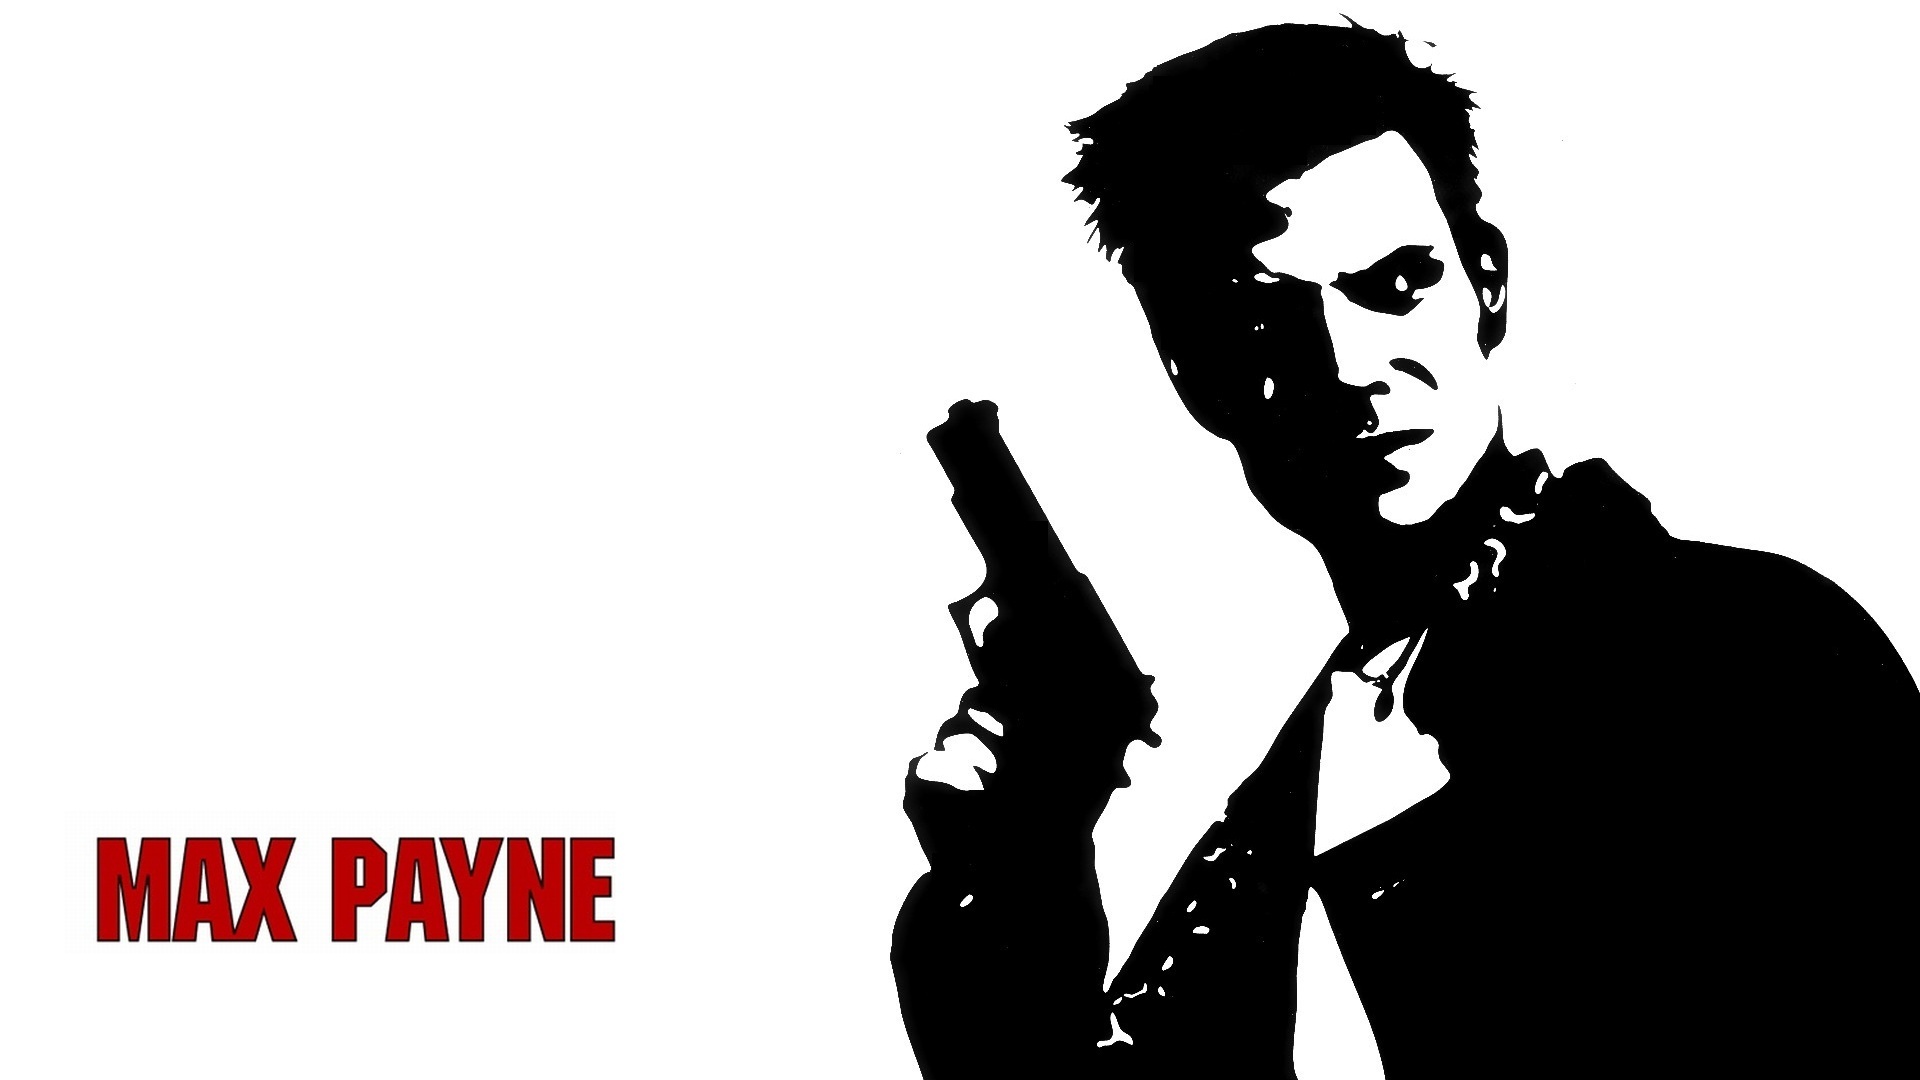 بازی Max Payne